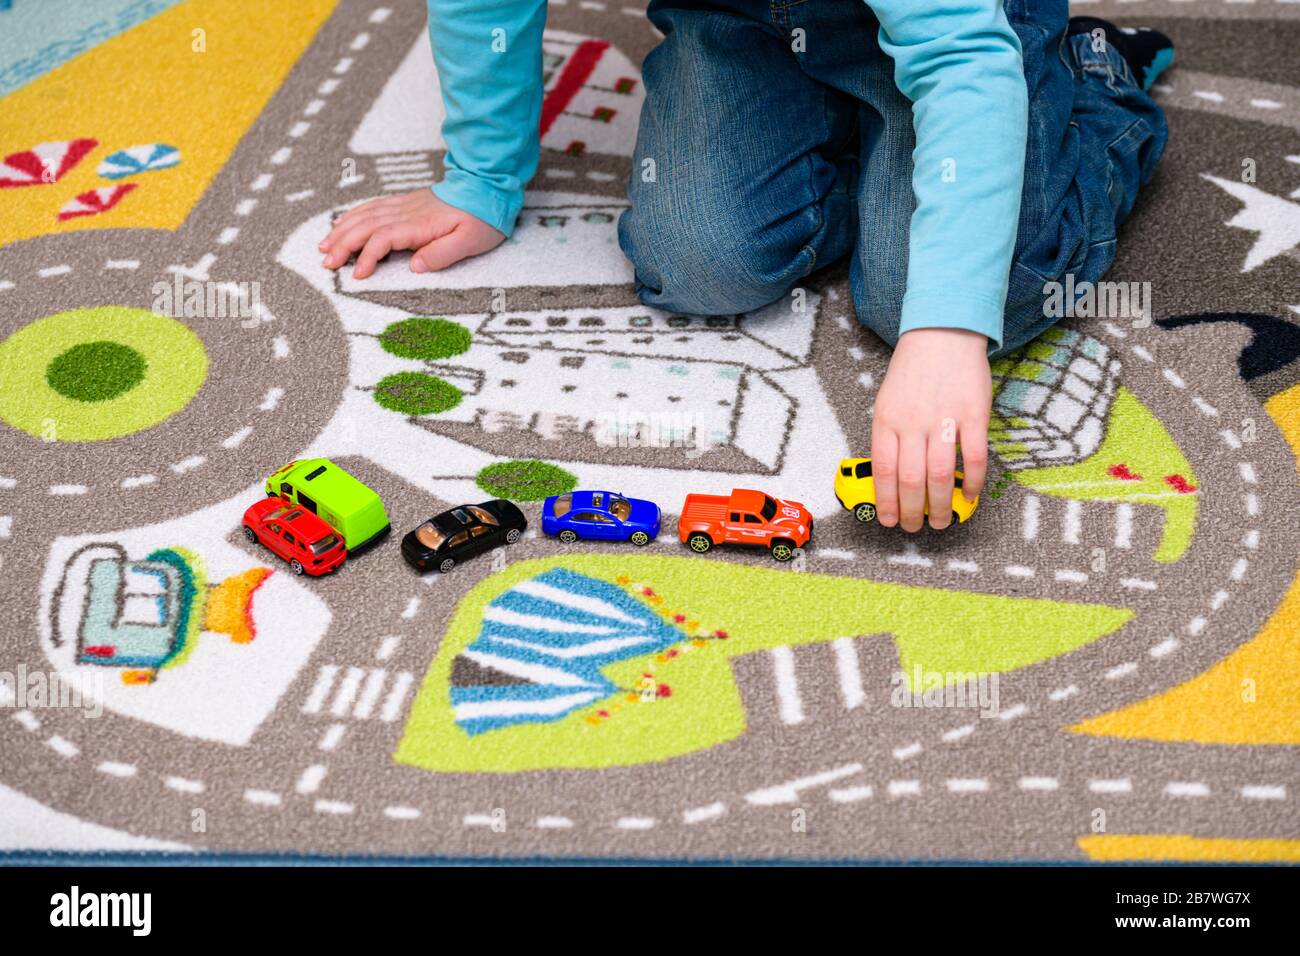 Ragazzo di cinque anni che gioca e allineano le auto giocattolo su un tappetino da gioco con le strade. Le auto hanno colori vivaci e il ragazzo è vestito di jeans blu. Foto Stock